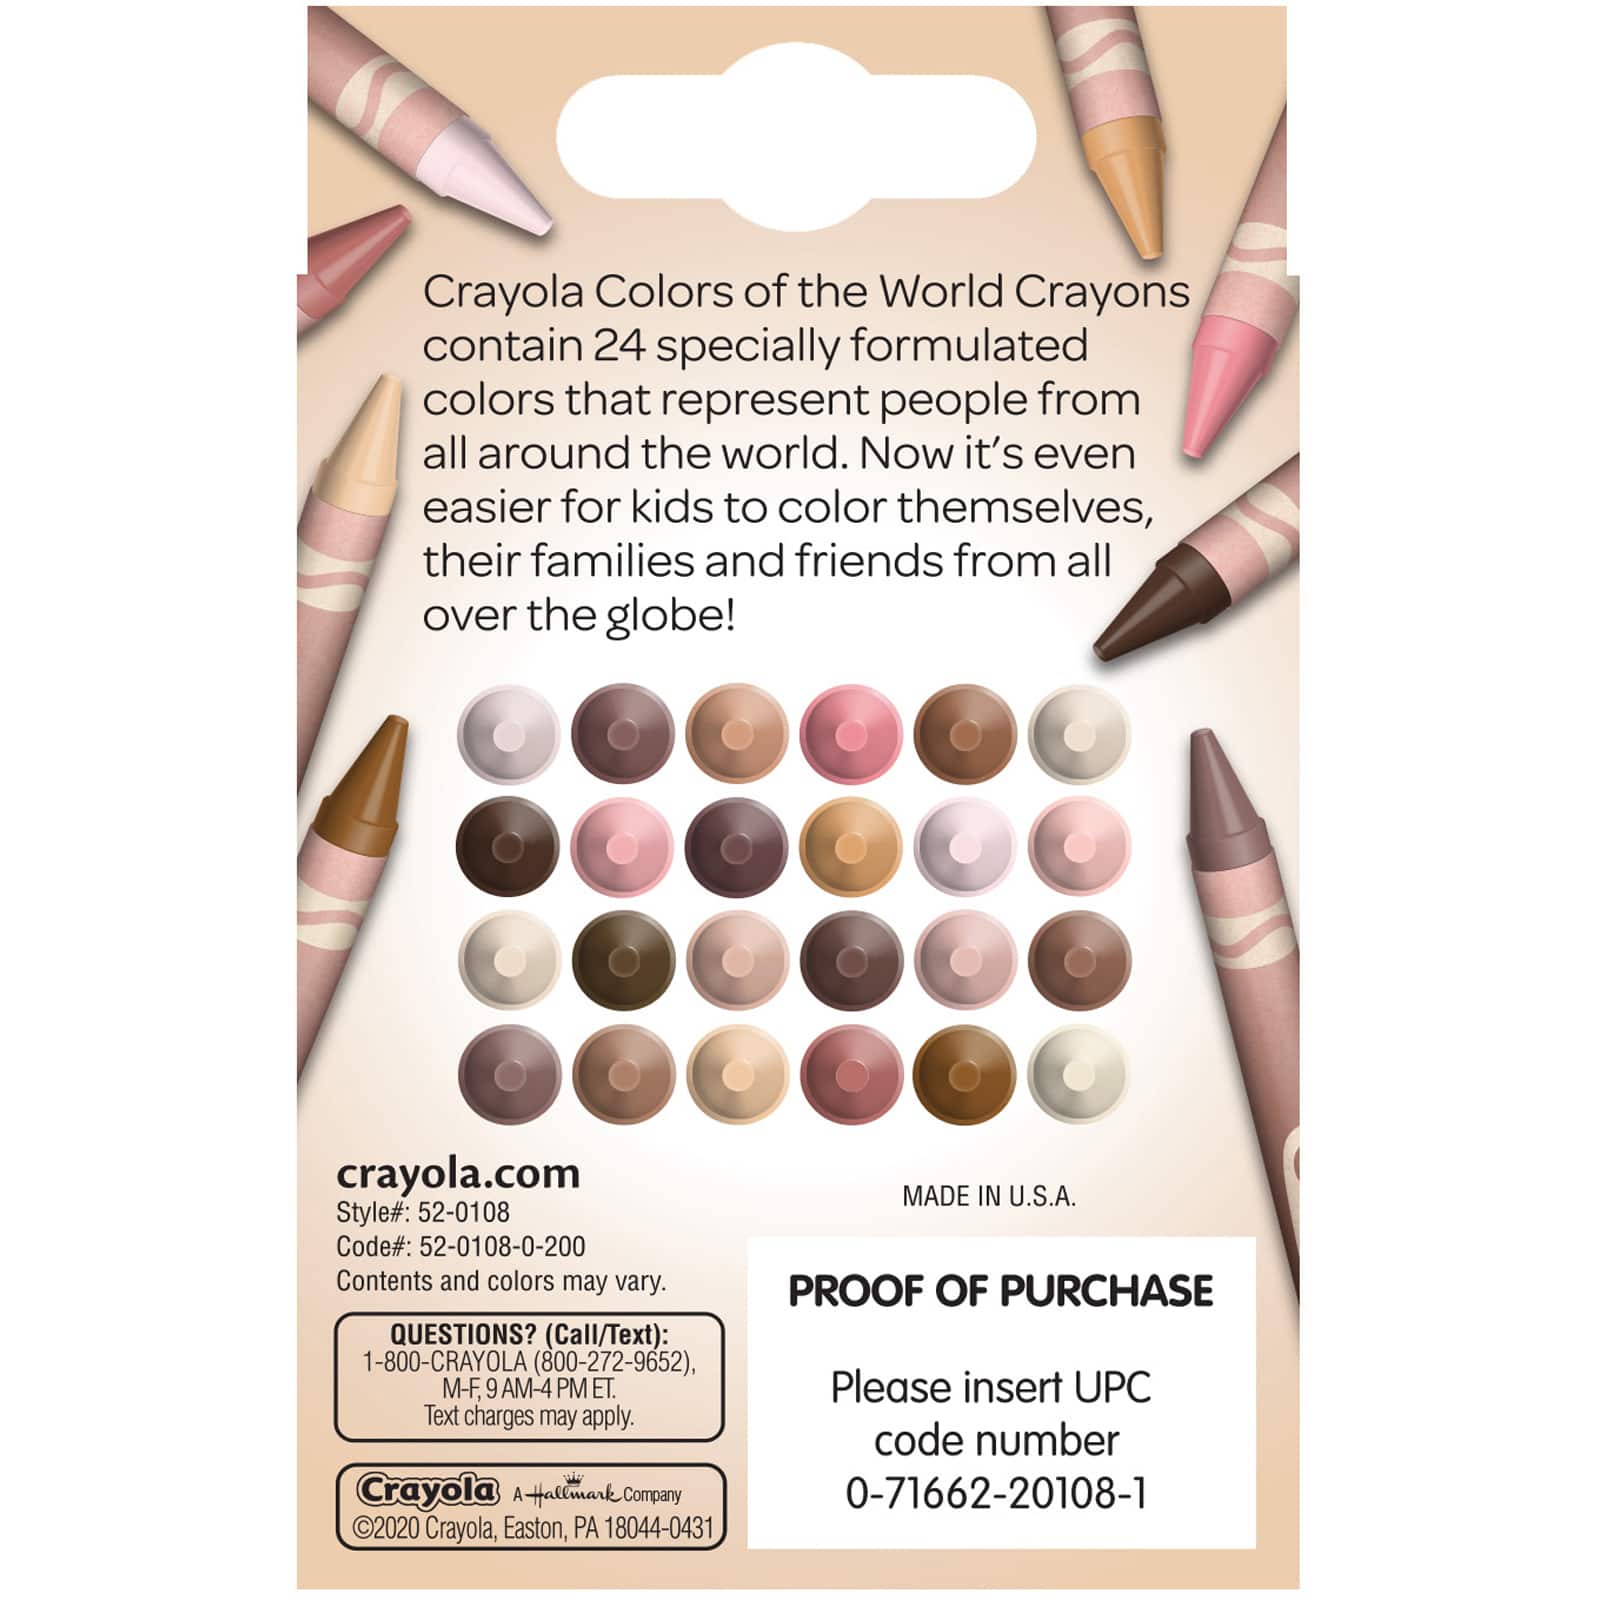 12 Packs: 24 ct. (288) Crayola® Metallic Crayons